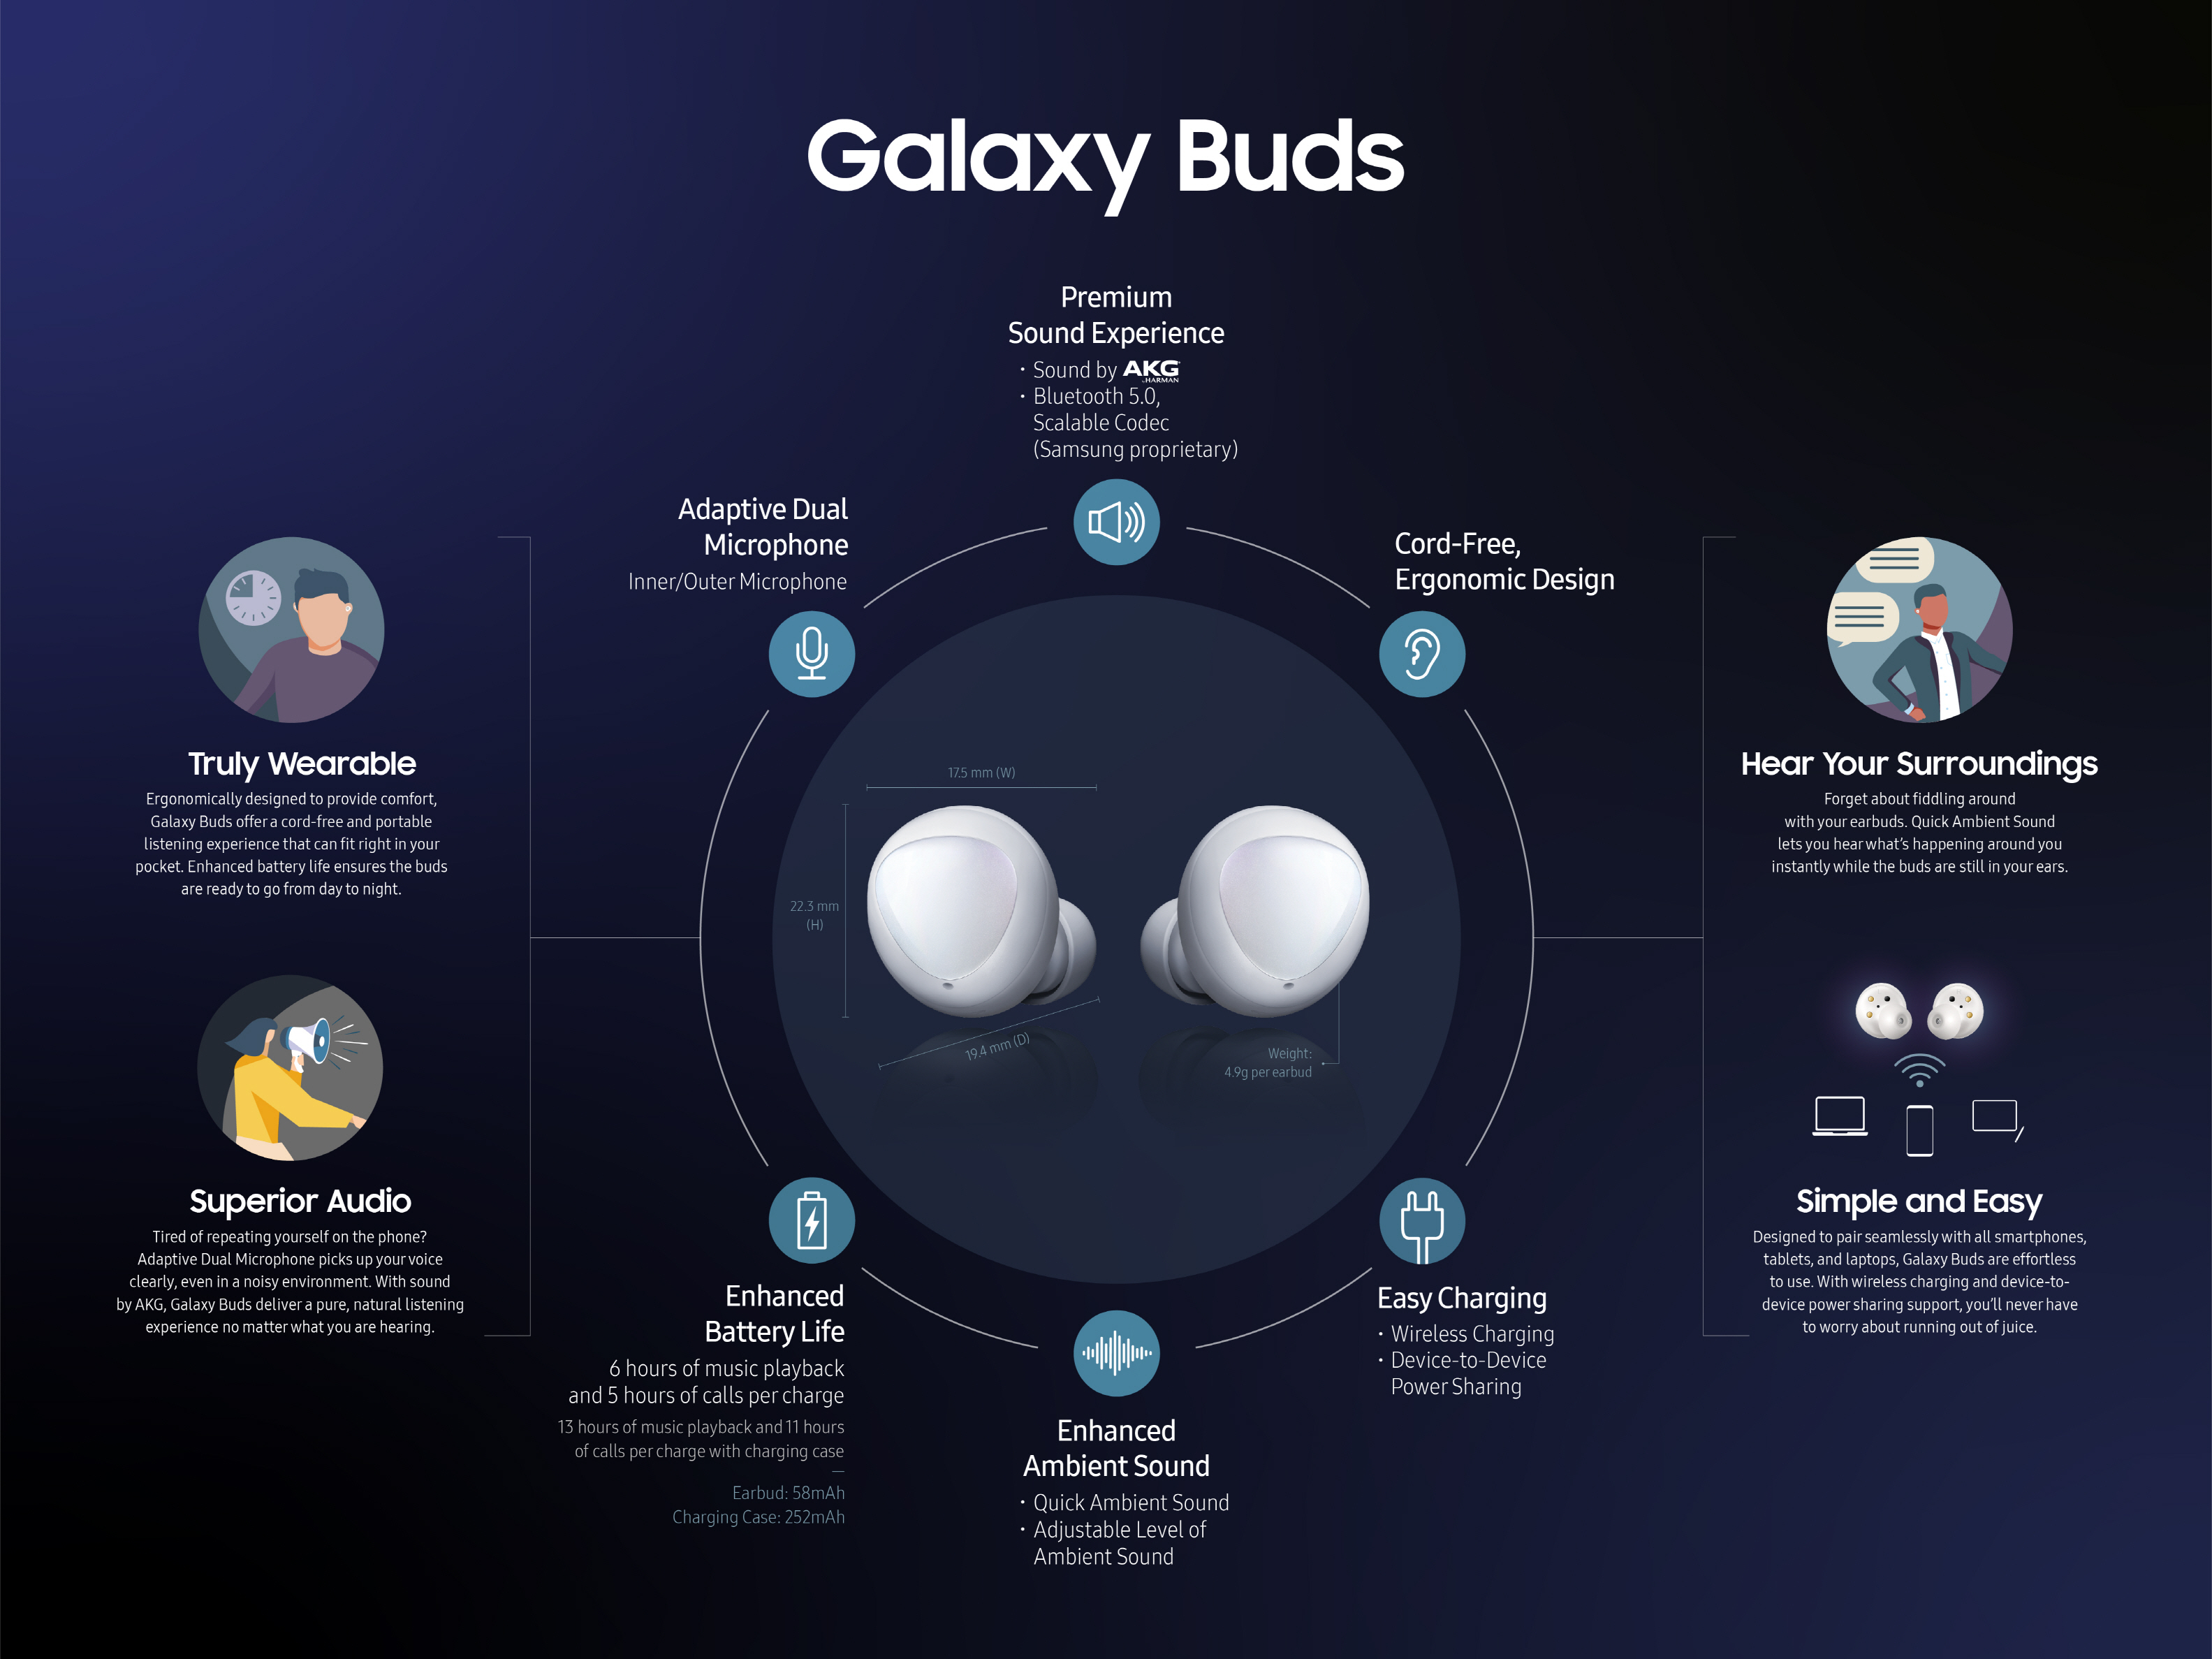   سماعات Galaxy Buds تنال المرتبة الأولى ضمن اختبار مجلة تقارير المستهلك 